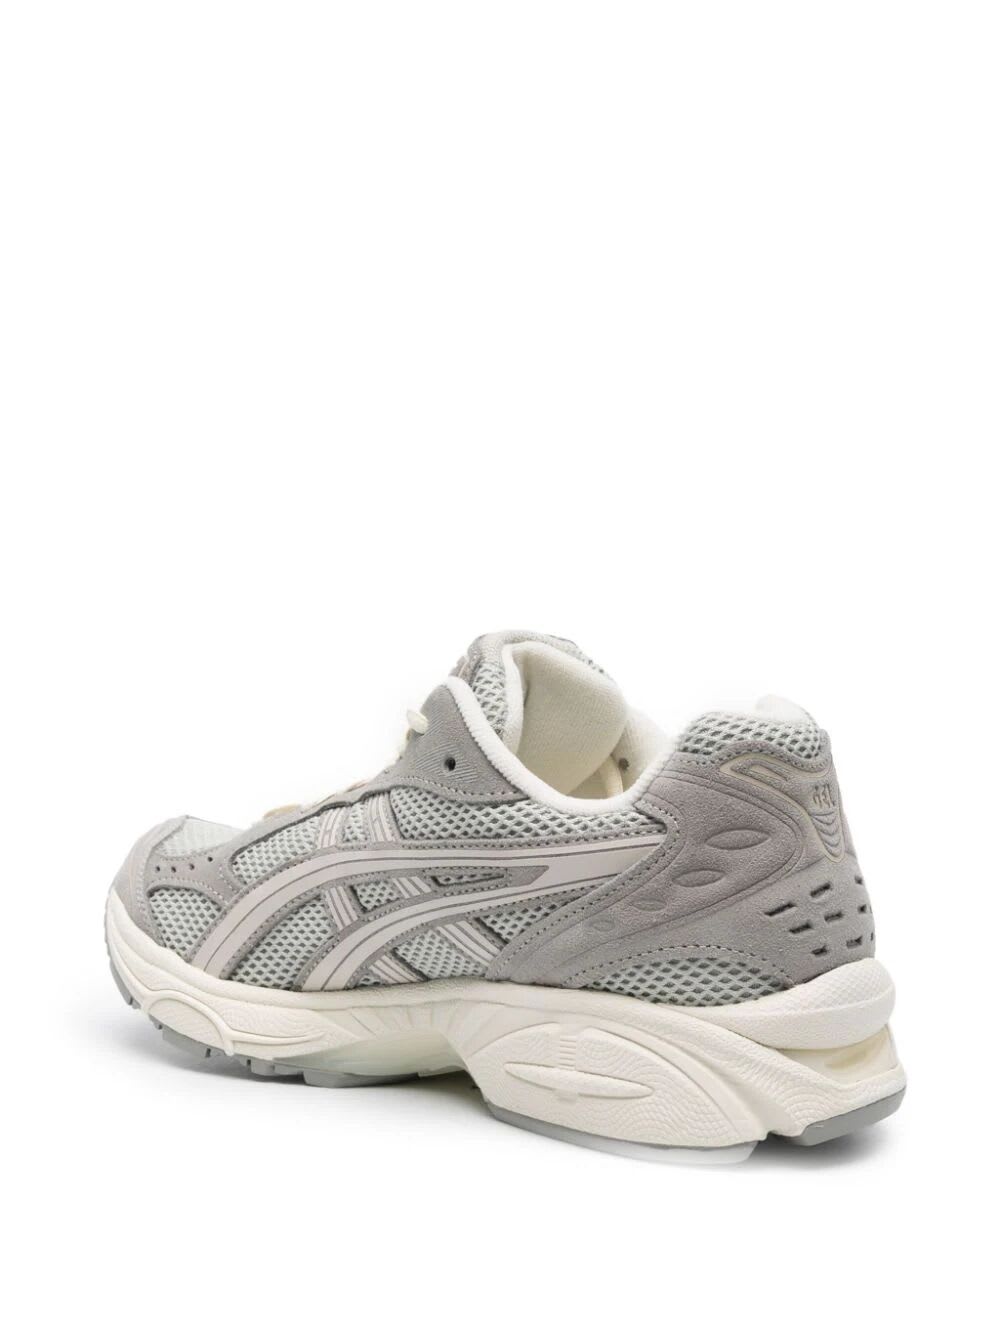 Shop Asics Gel Kayano 14 Sneakers In White Sage Smoke Grey